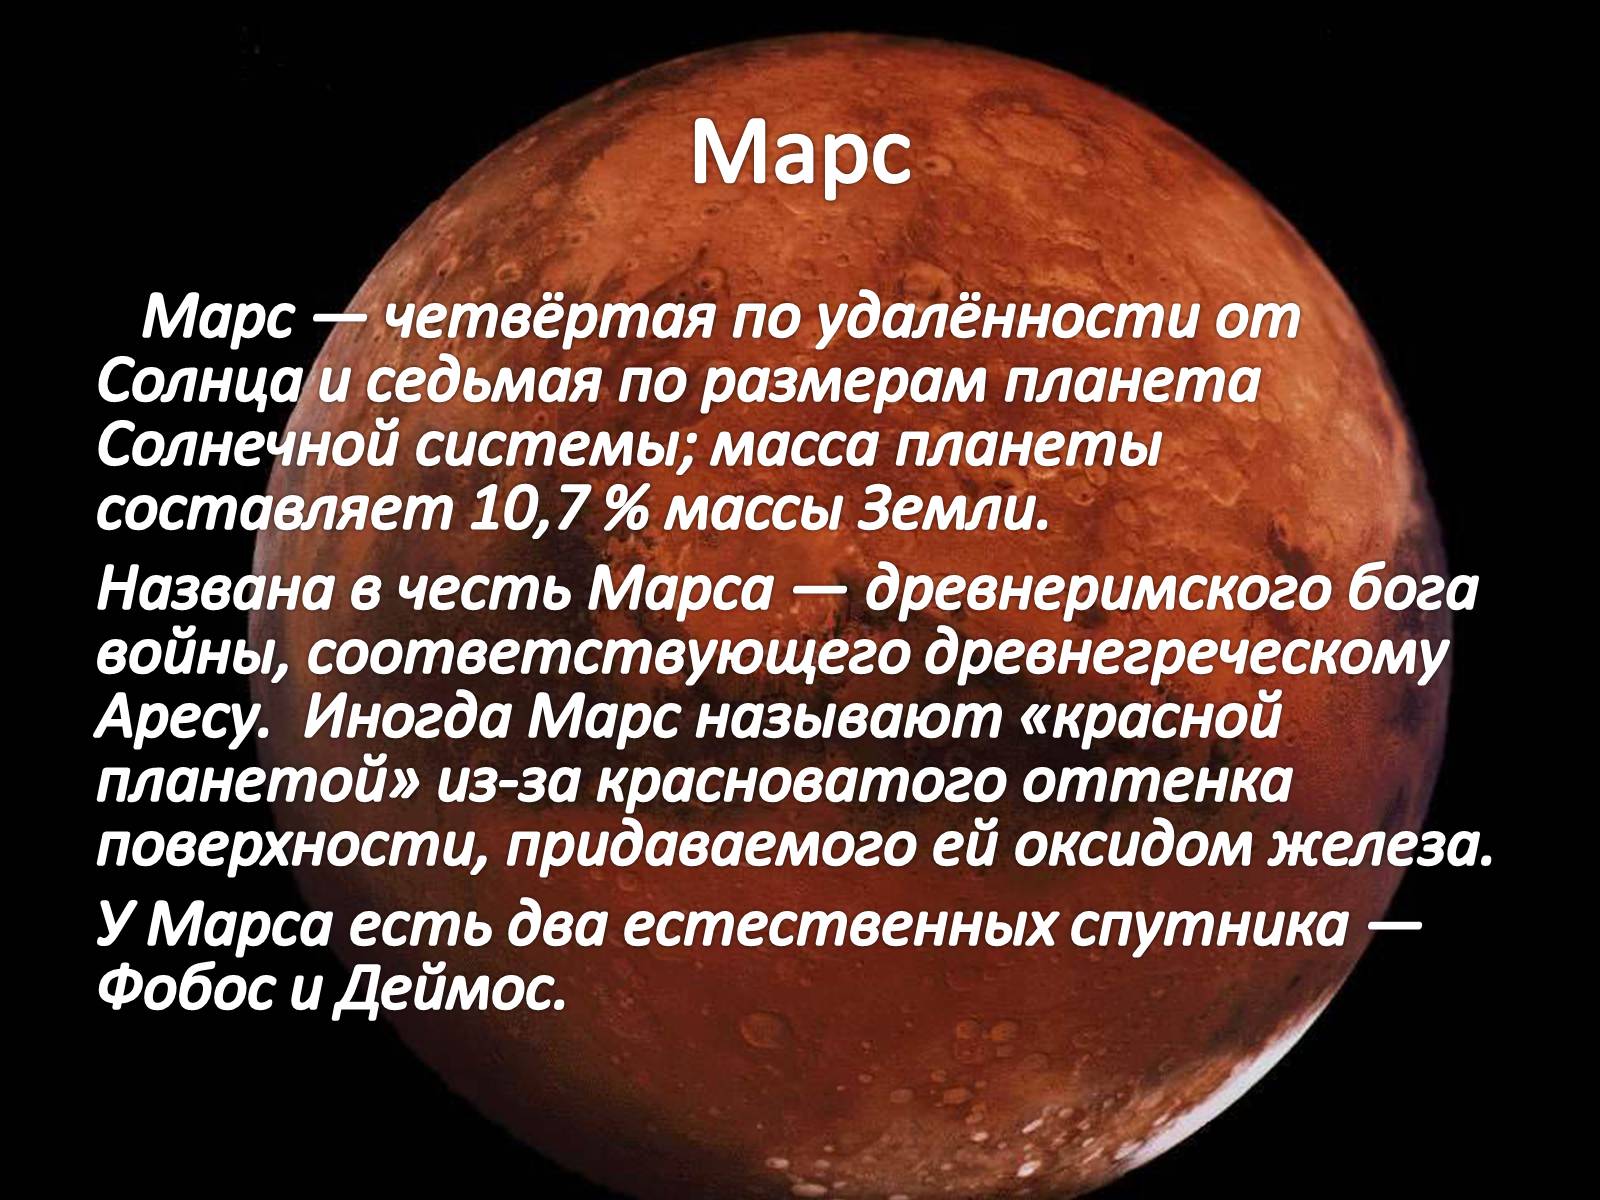 Марс ближайший сосед нашей земли текст. Доклад о планетах. Сообщение о люблйпланете. Доклад о планете. Сообщение на тему планеты.